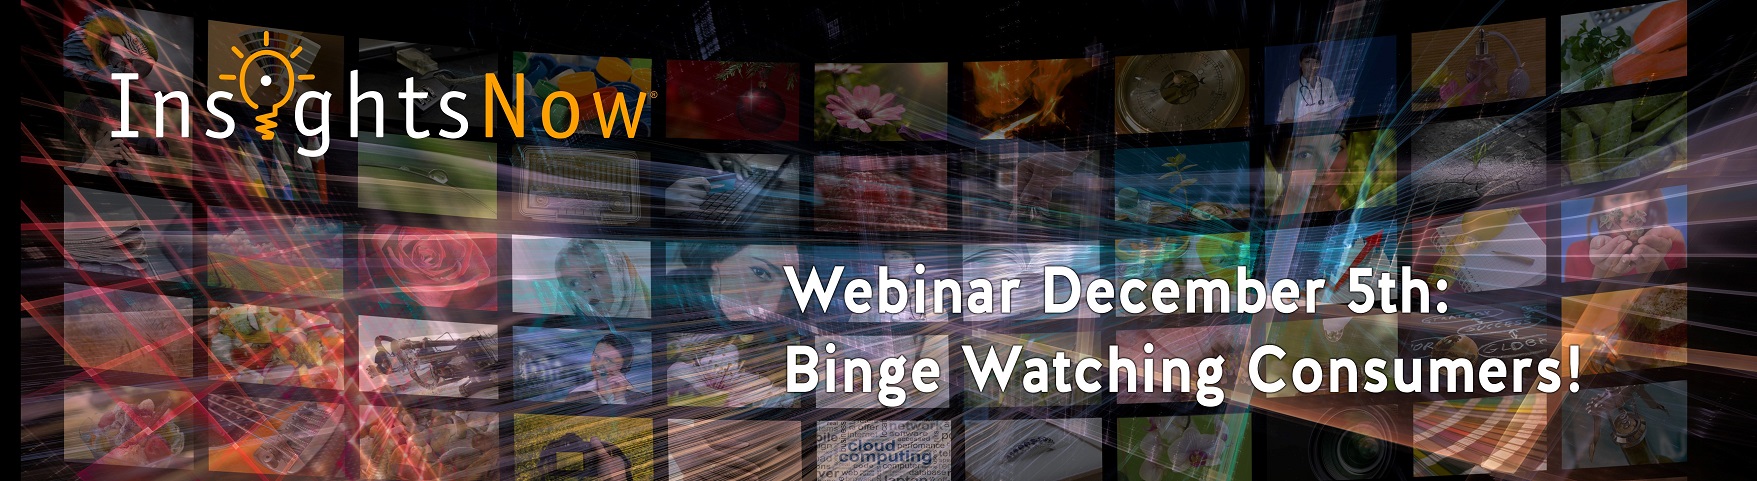 Webinar 5 – December 2017 “Binge Watching Consumers”